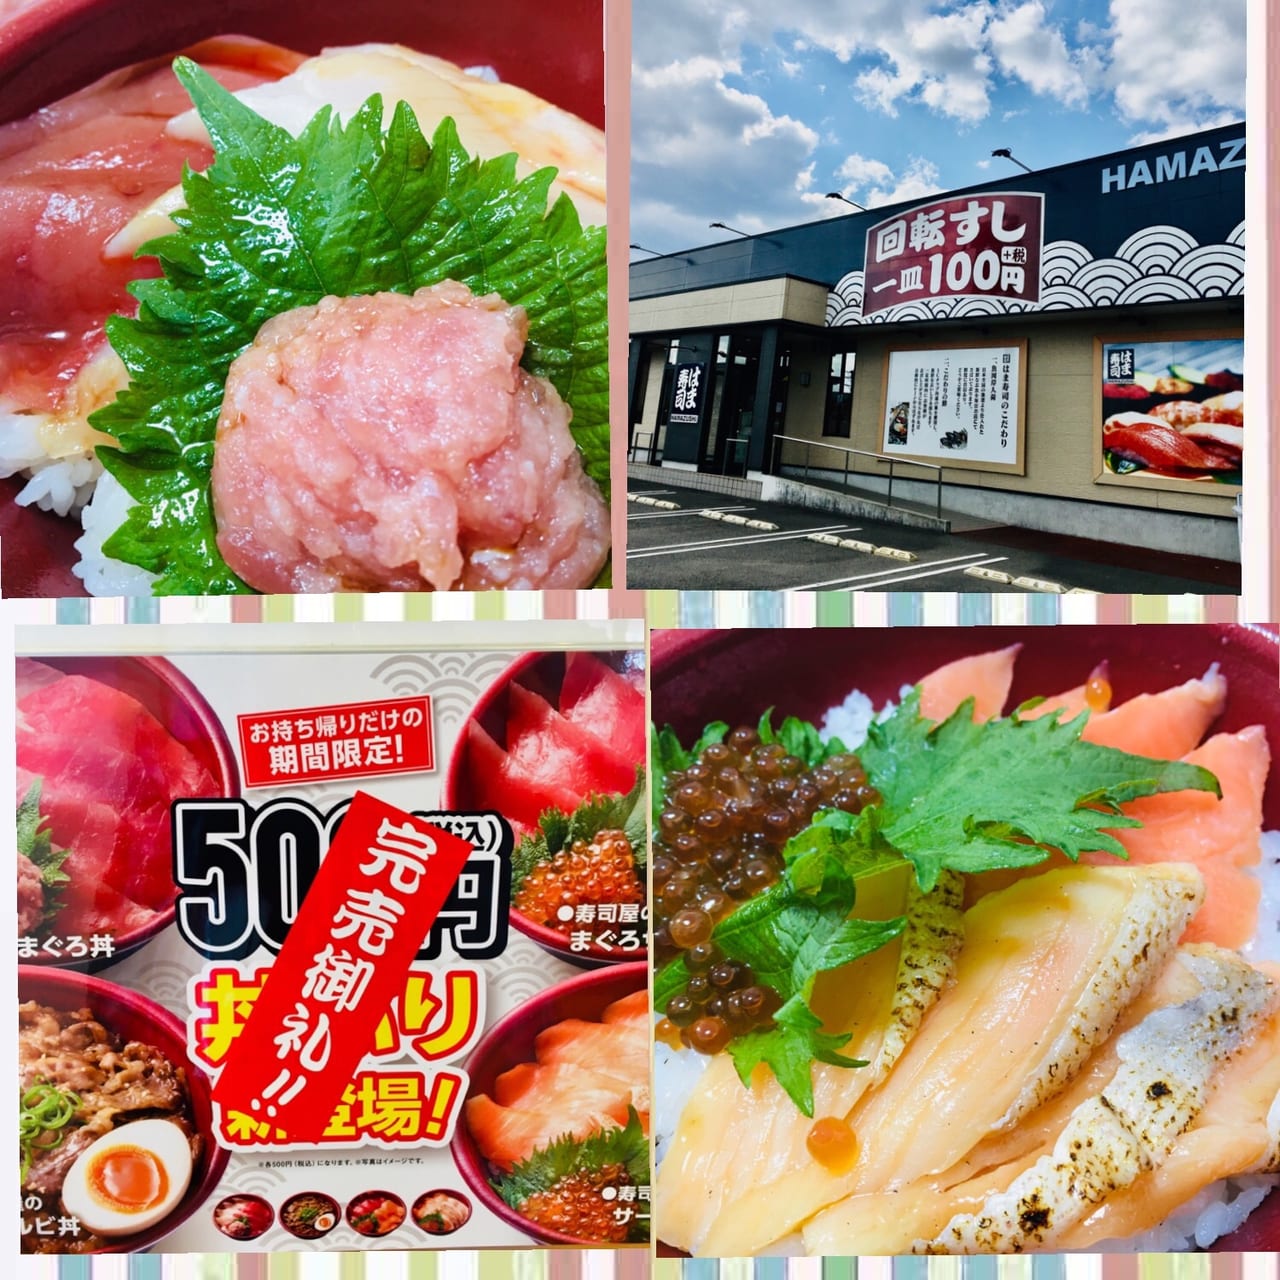 は ま 寿司 海鮮 丼 くら寿司の平日限定500円ランチで 旬の海鮮丼 を